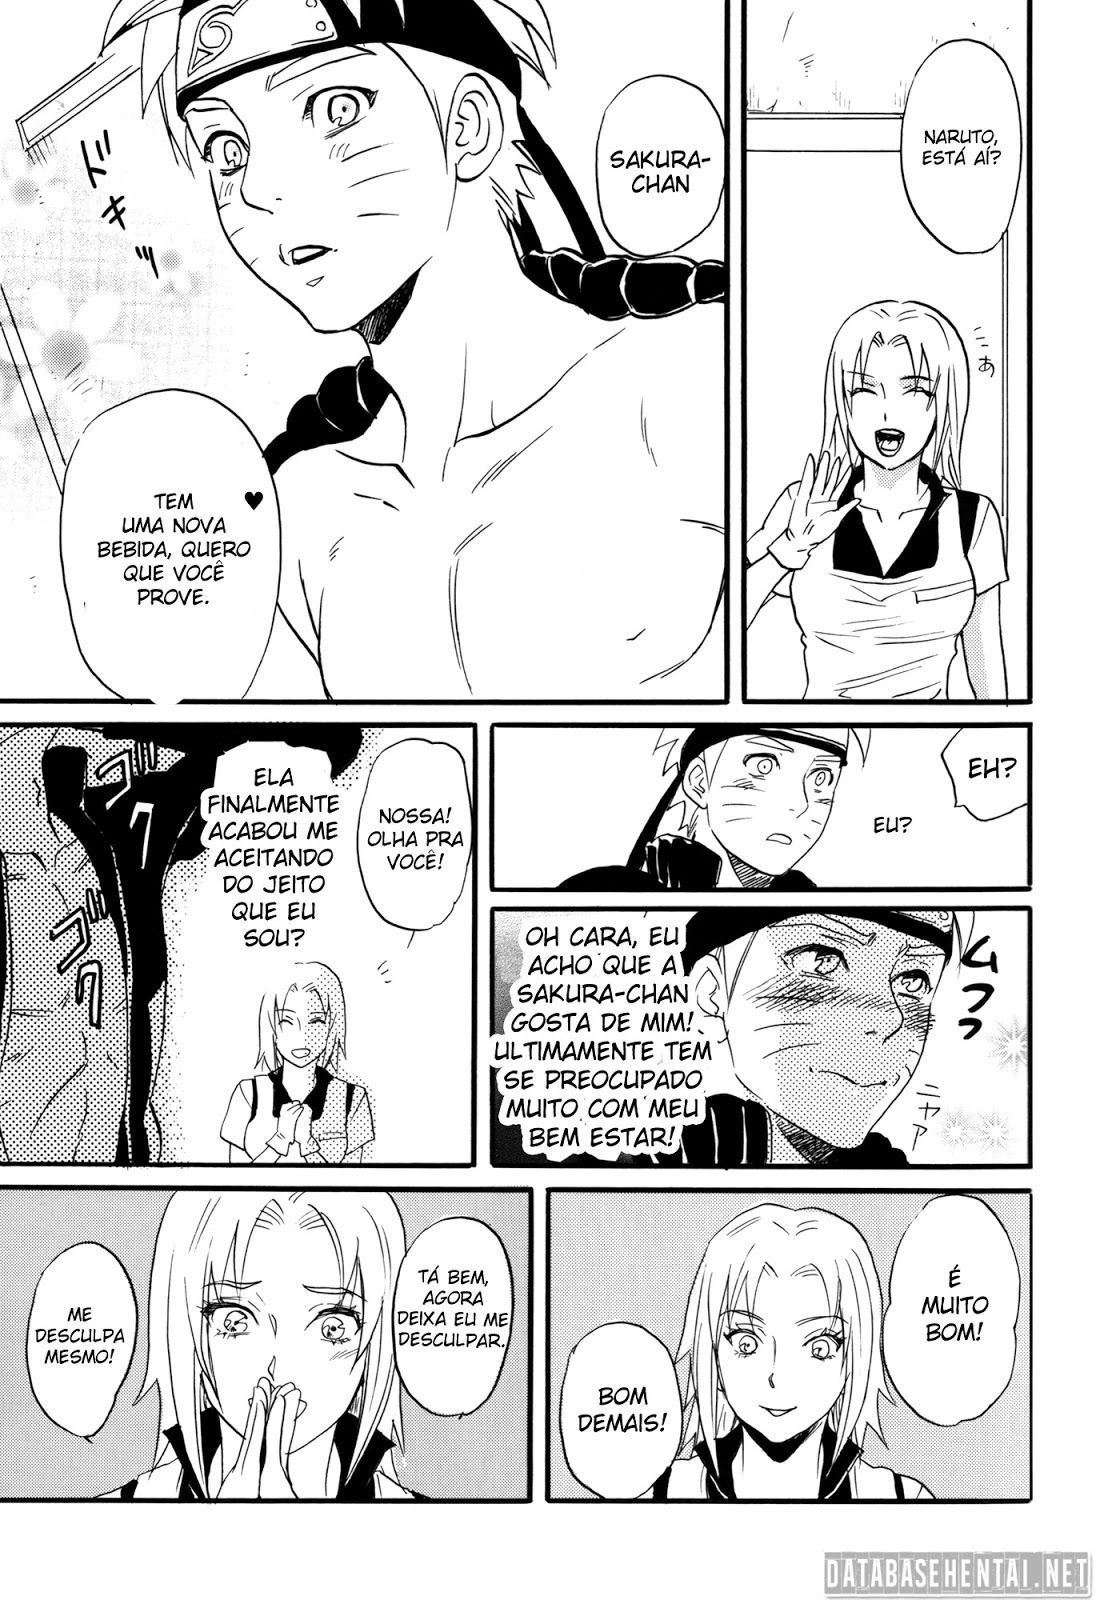 Sasuke e naruto mostrando que são bons amantes quando estão juntinhos